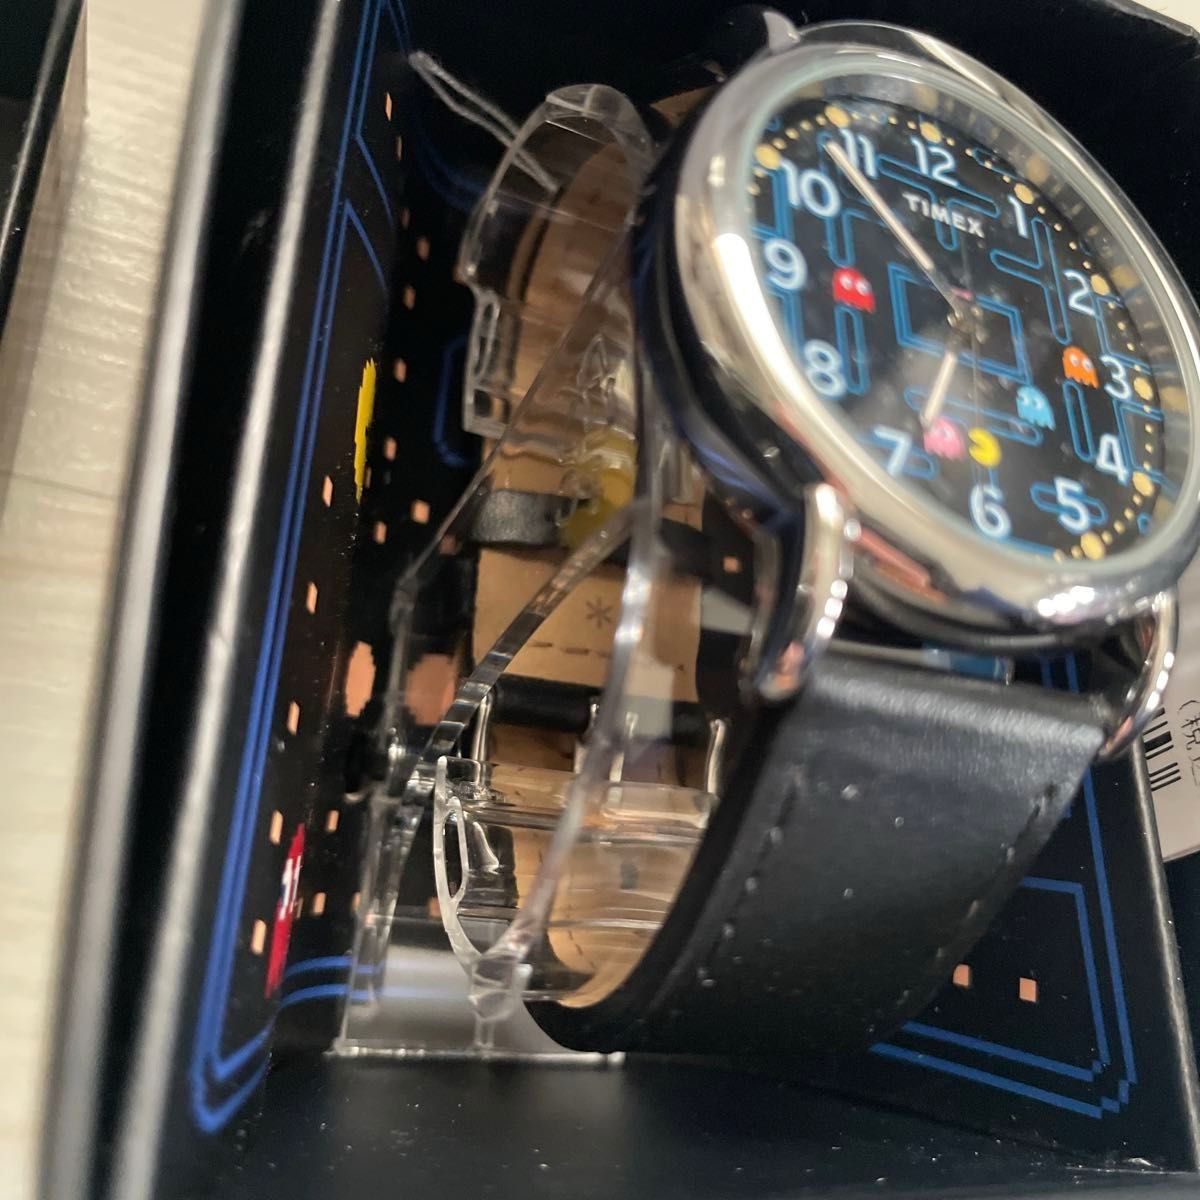 [新品未使用] タイメックス パックマン ウィークエンダー 40周年コラボ 腕時計